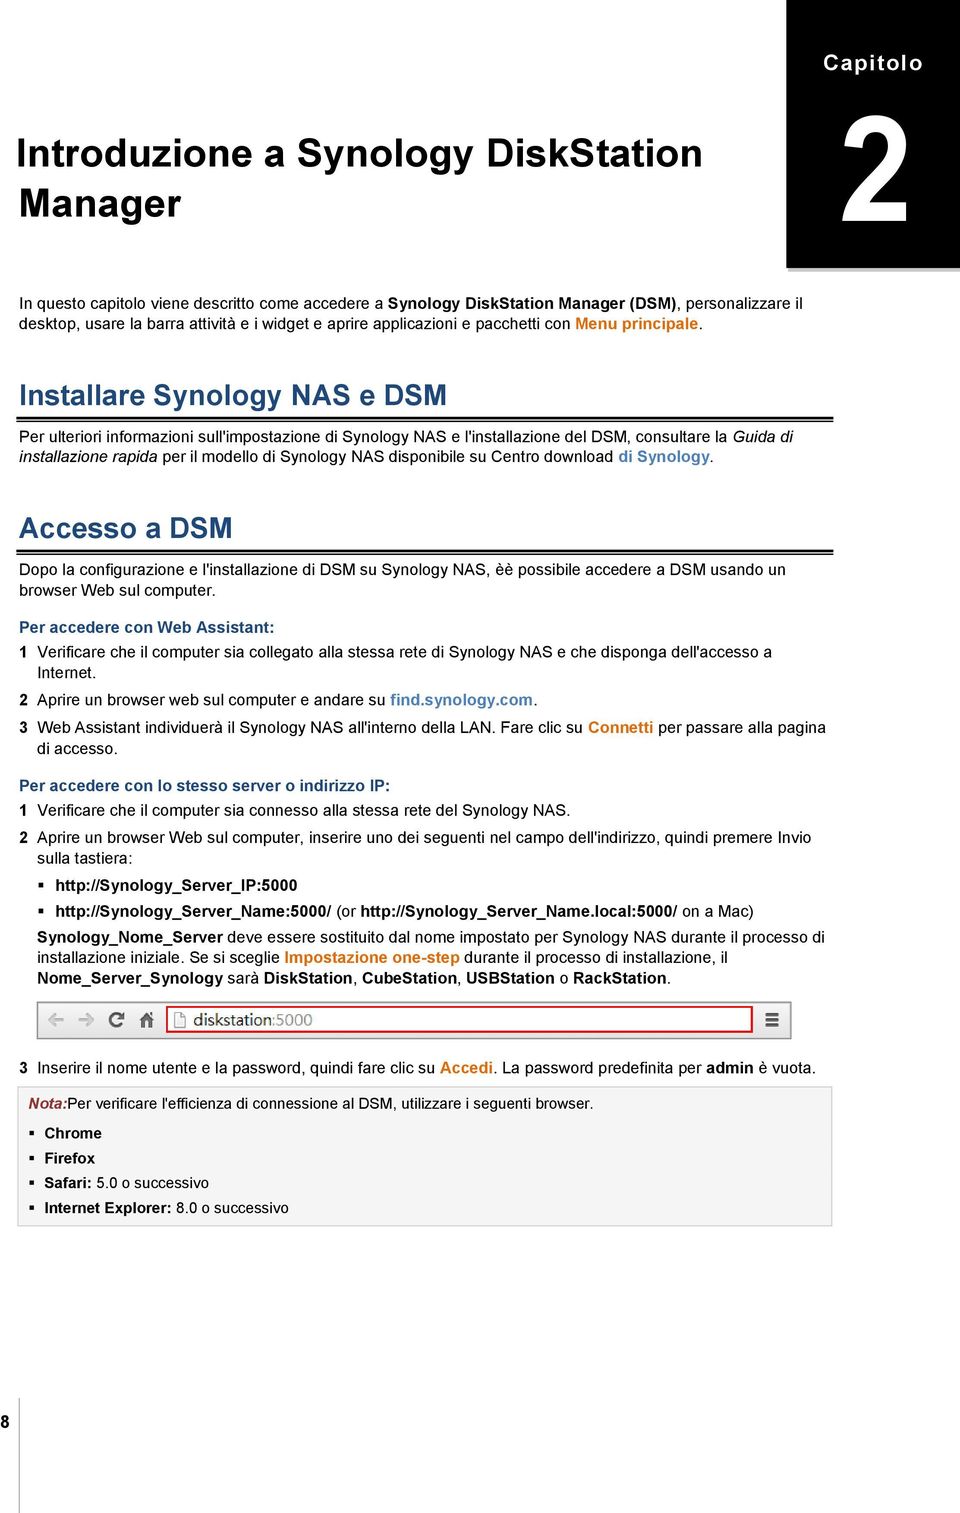 Installare Synology NAS e DSM Per ulteriori informazioni sull'impostazione di Synology NAS e l'installazione del DSM, consultare la Guida di installazione rapida per il modello di Synology NAS